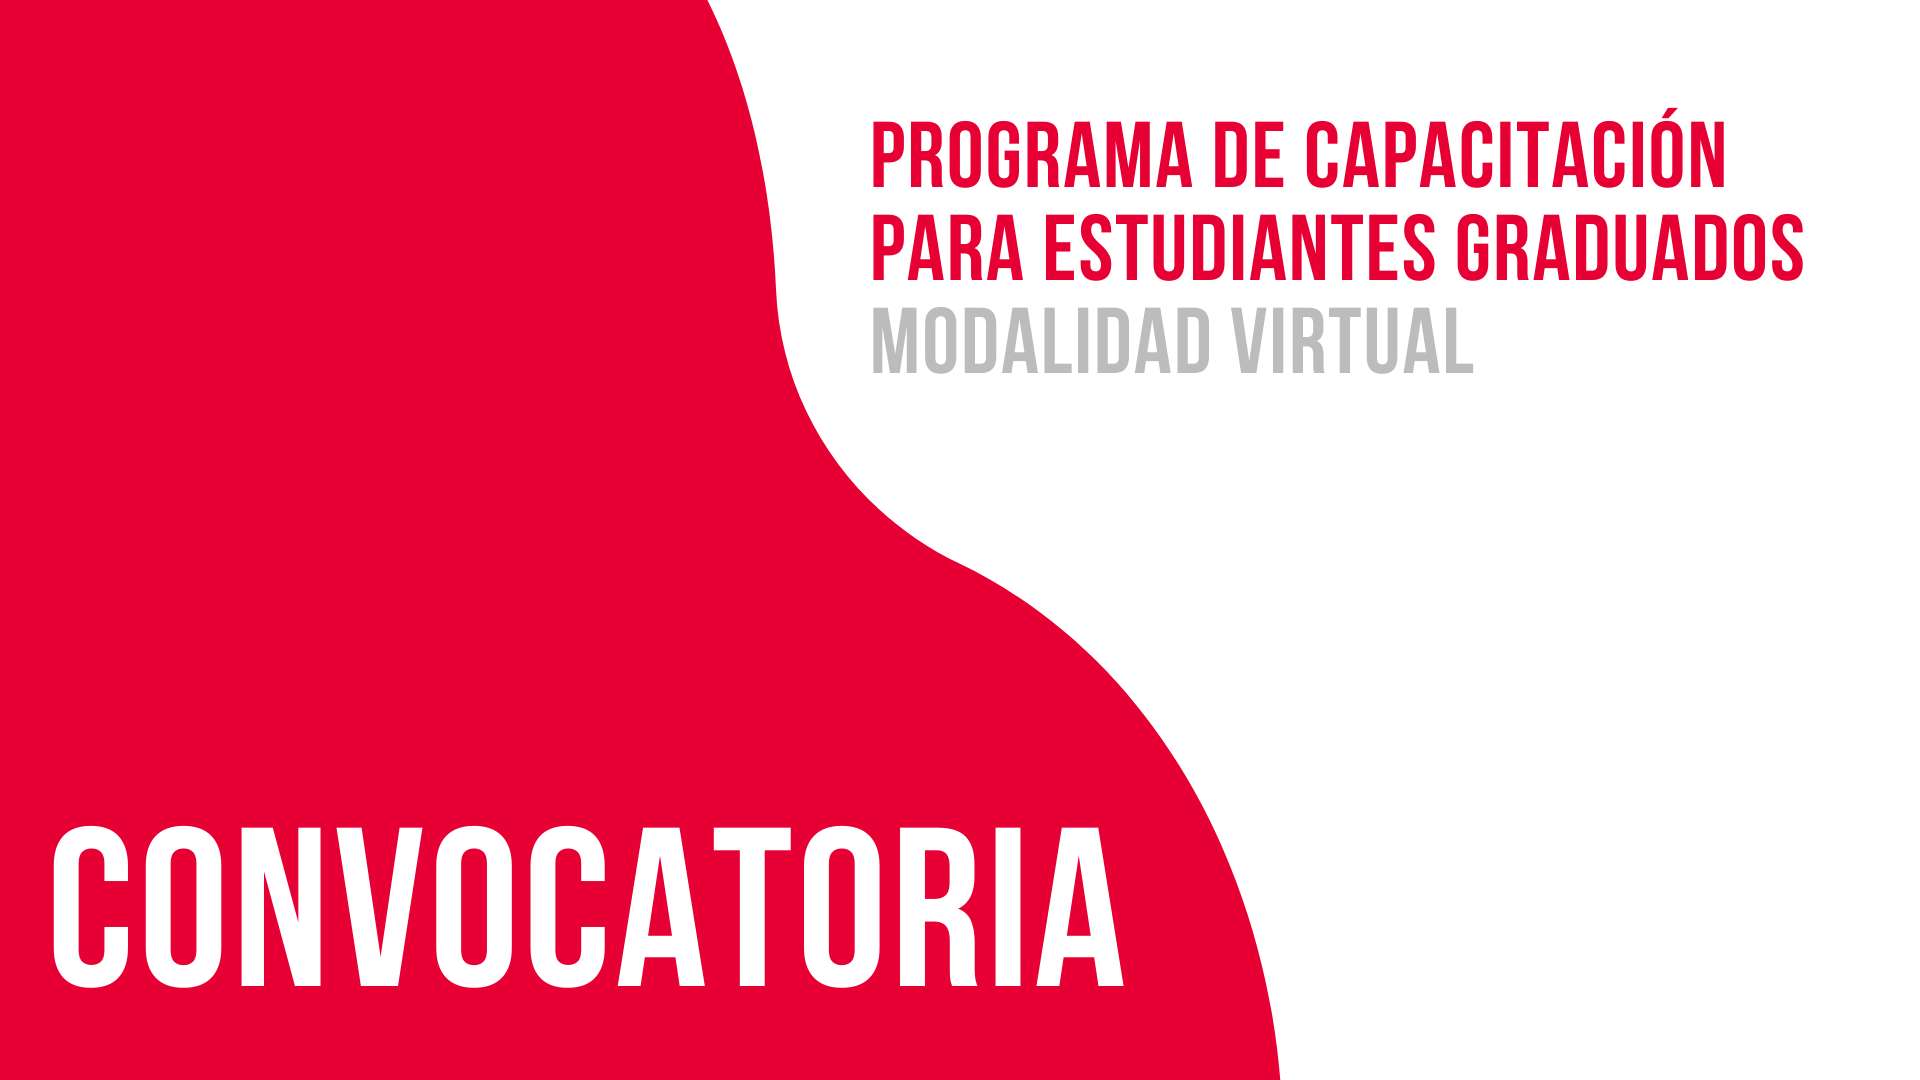 Convocatoria: Programa de Capacitación para Estudiantes Graduados Modalidad Virtual